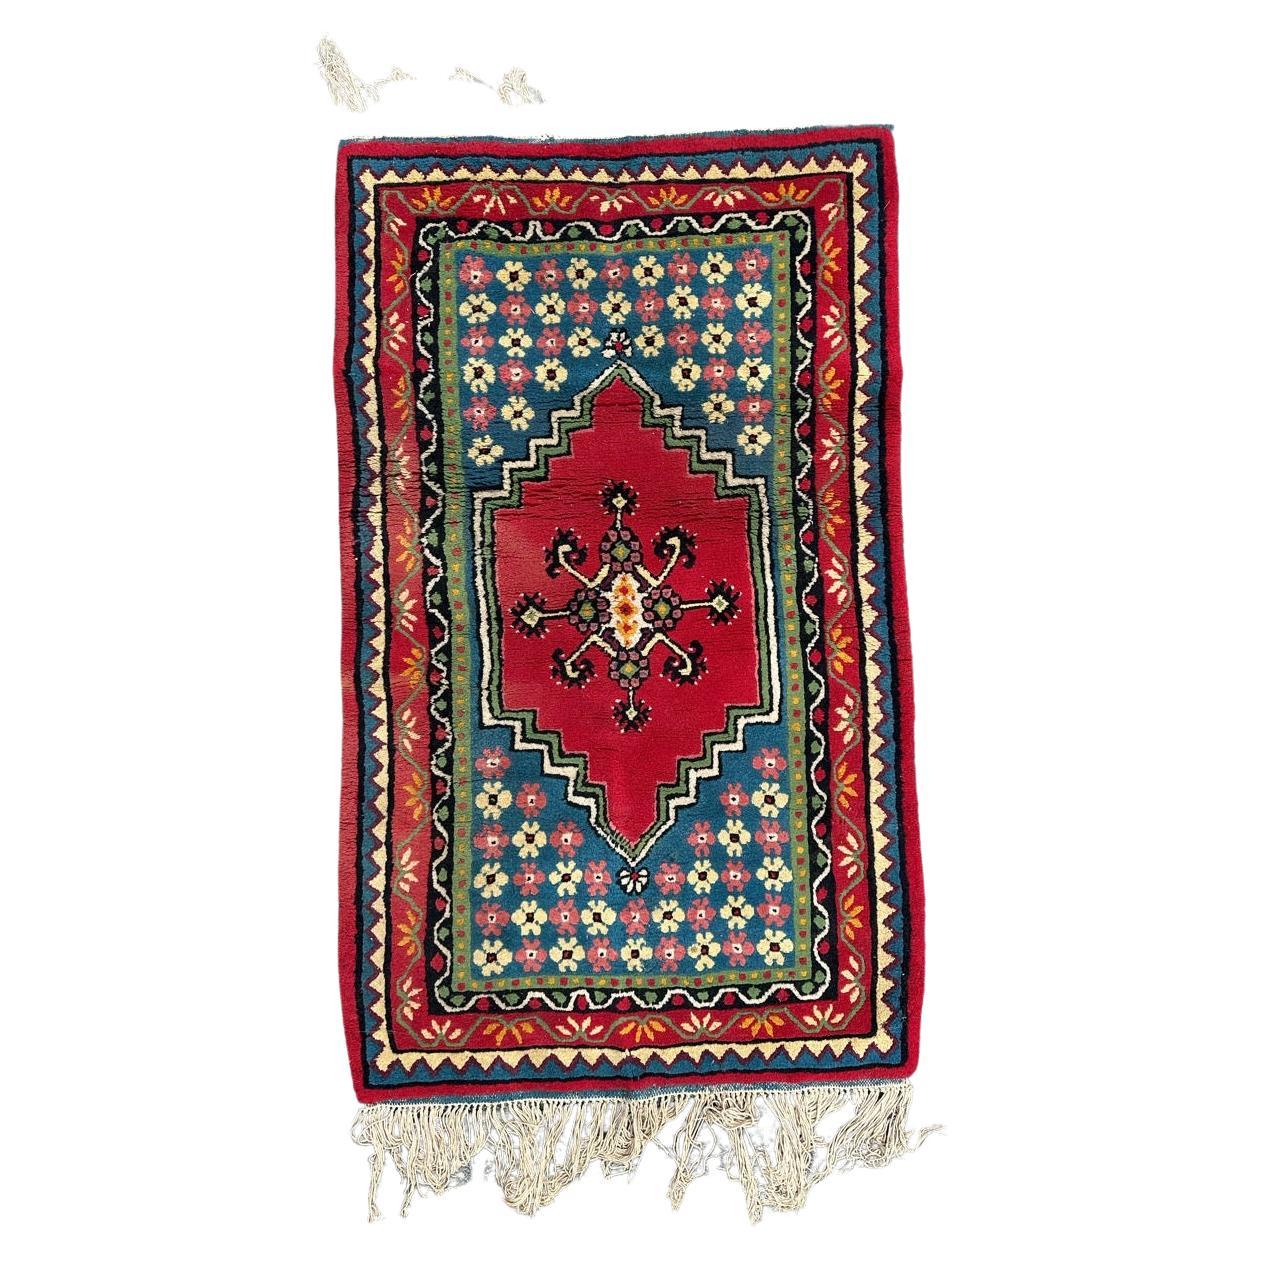 Bobyrug’s nice vintage tribal Tunisian rug